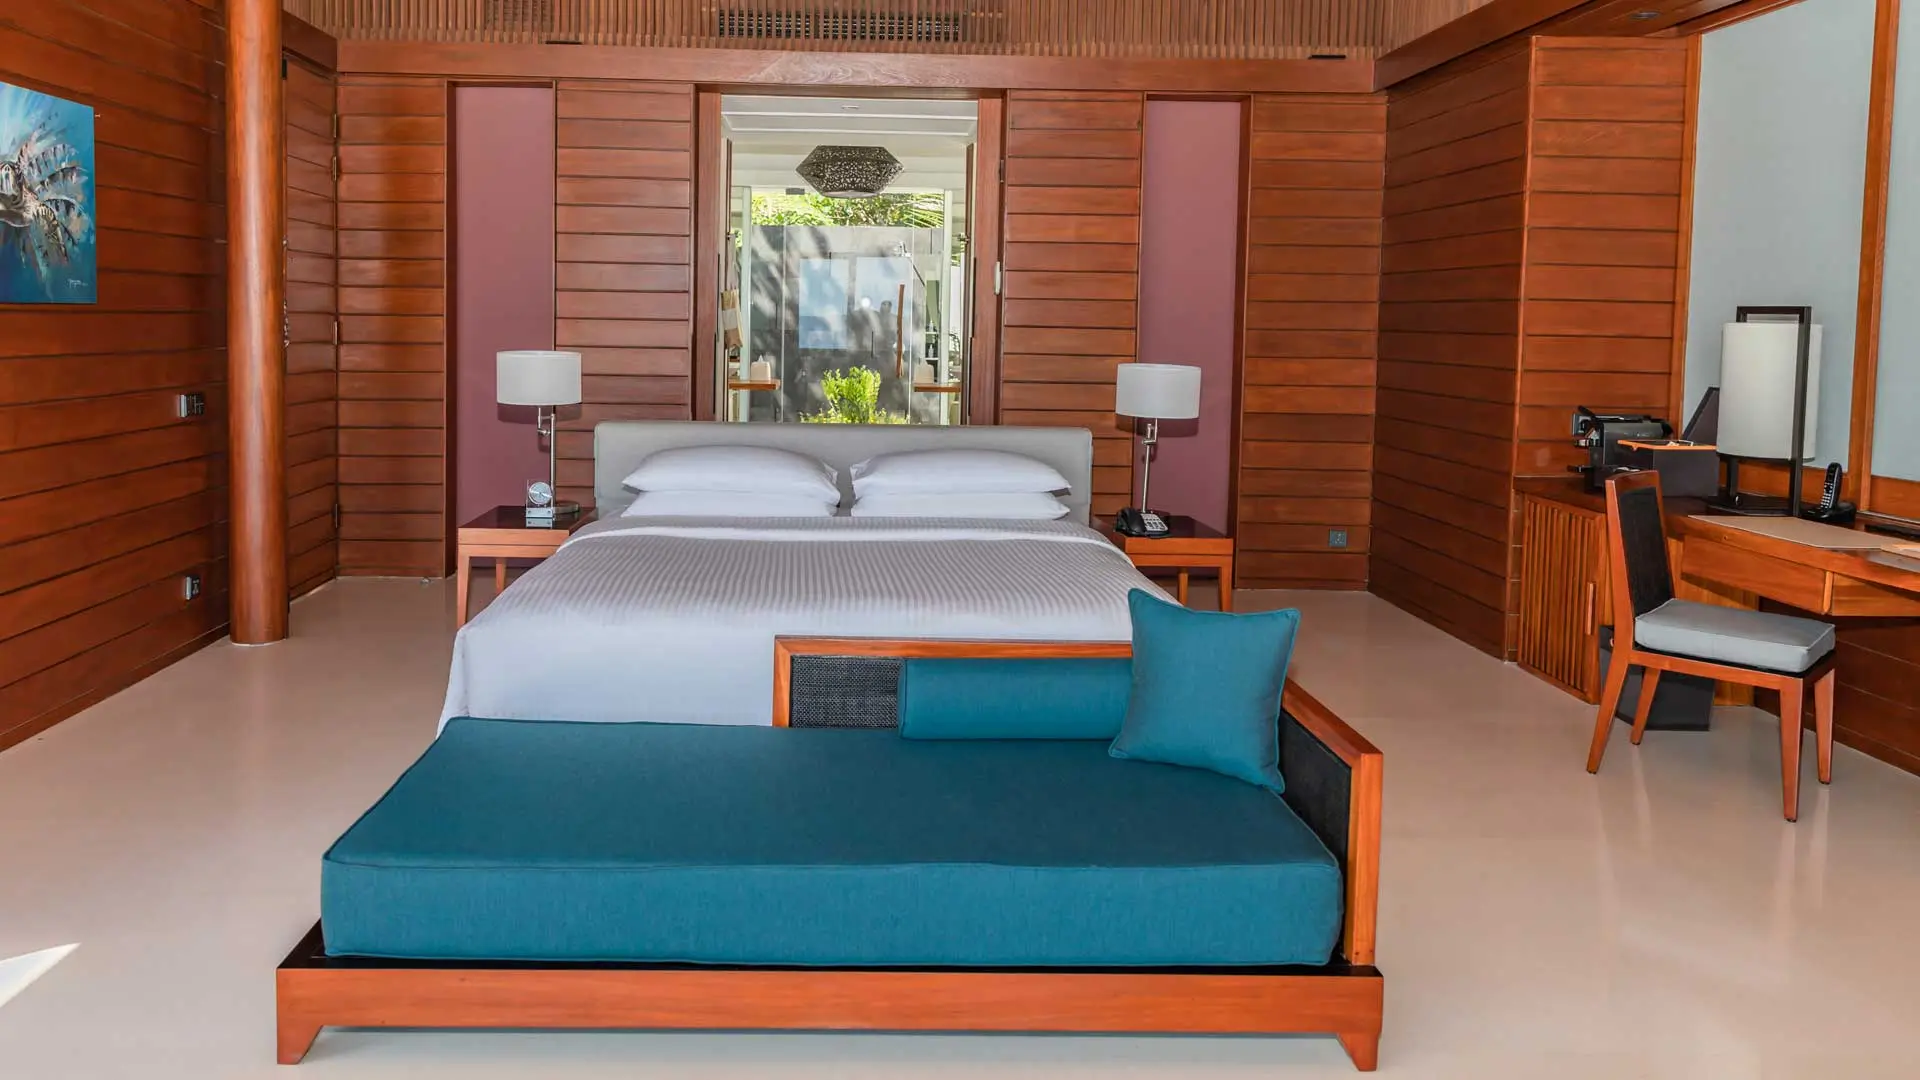 Hotel review Accommodation' - Park Hyatt Maldives Hadahaa - 3